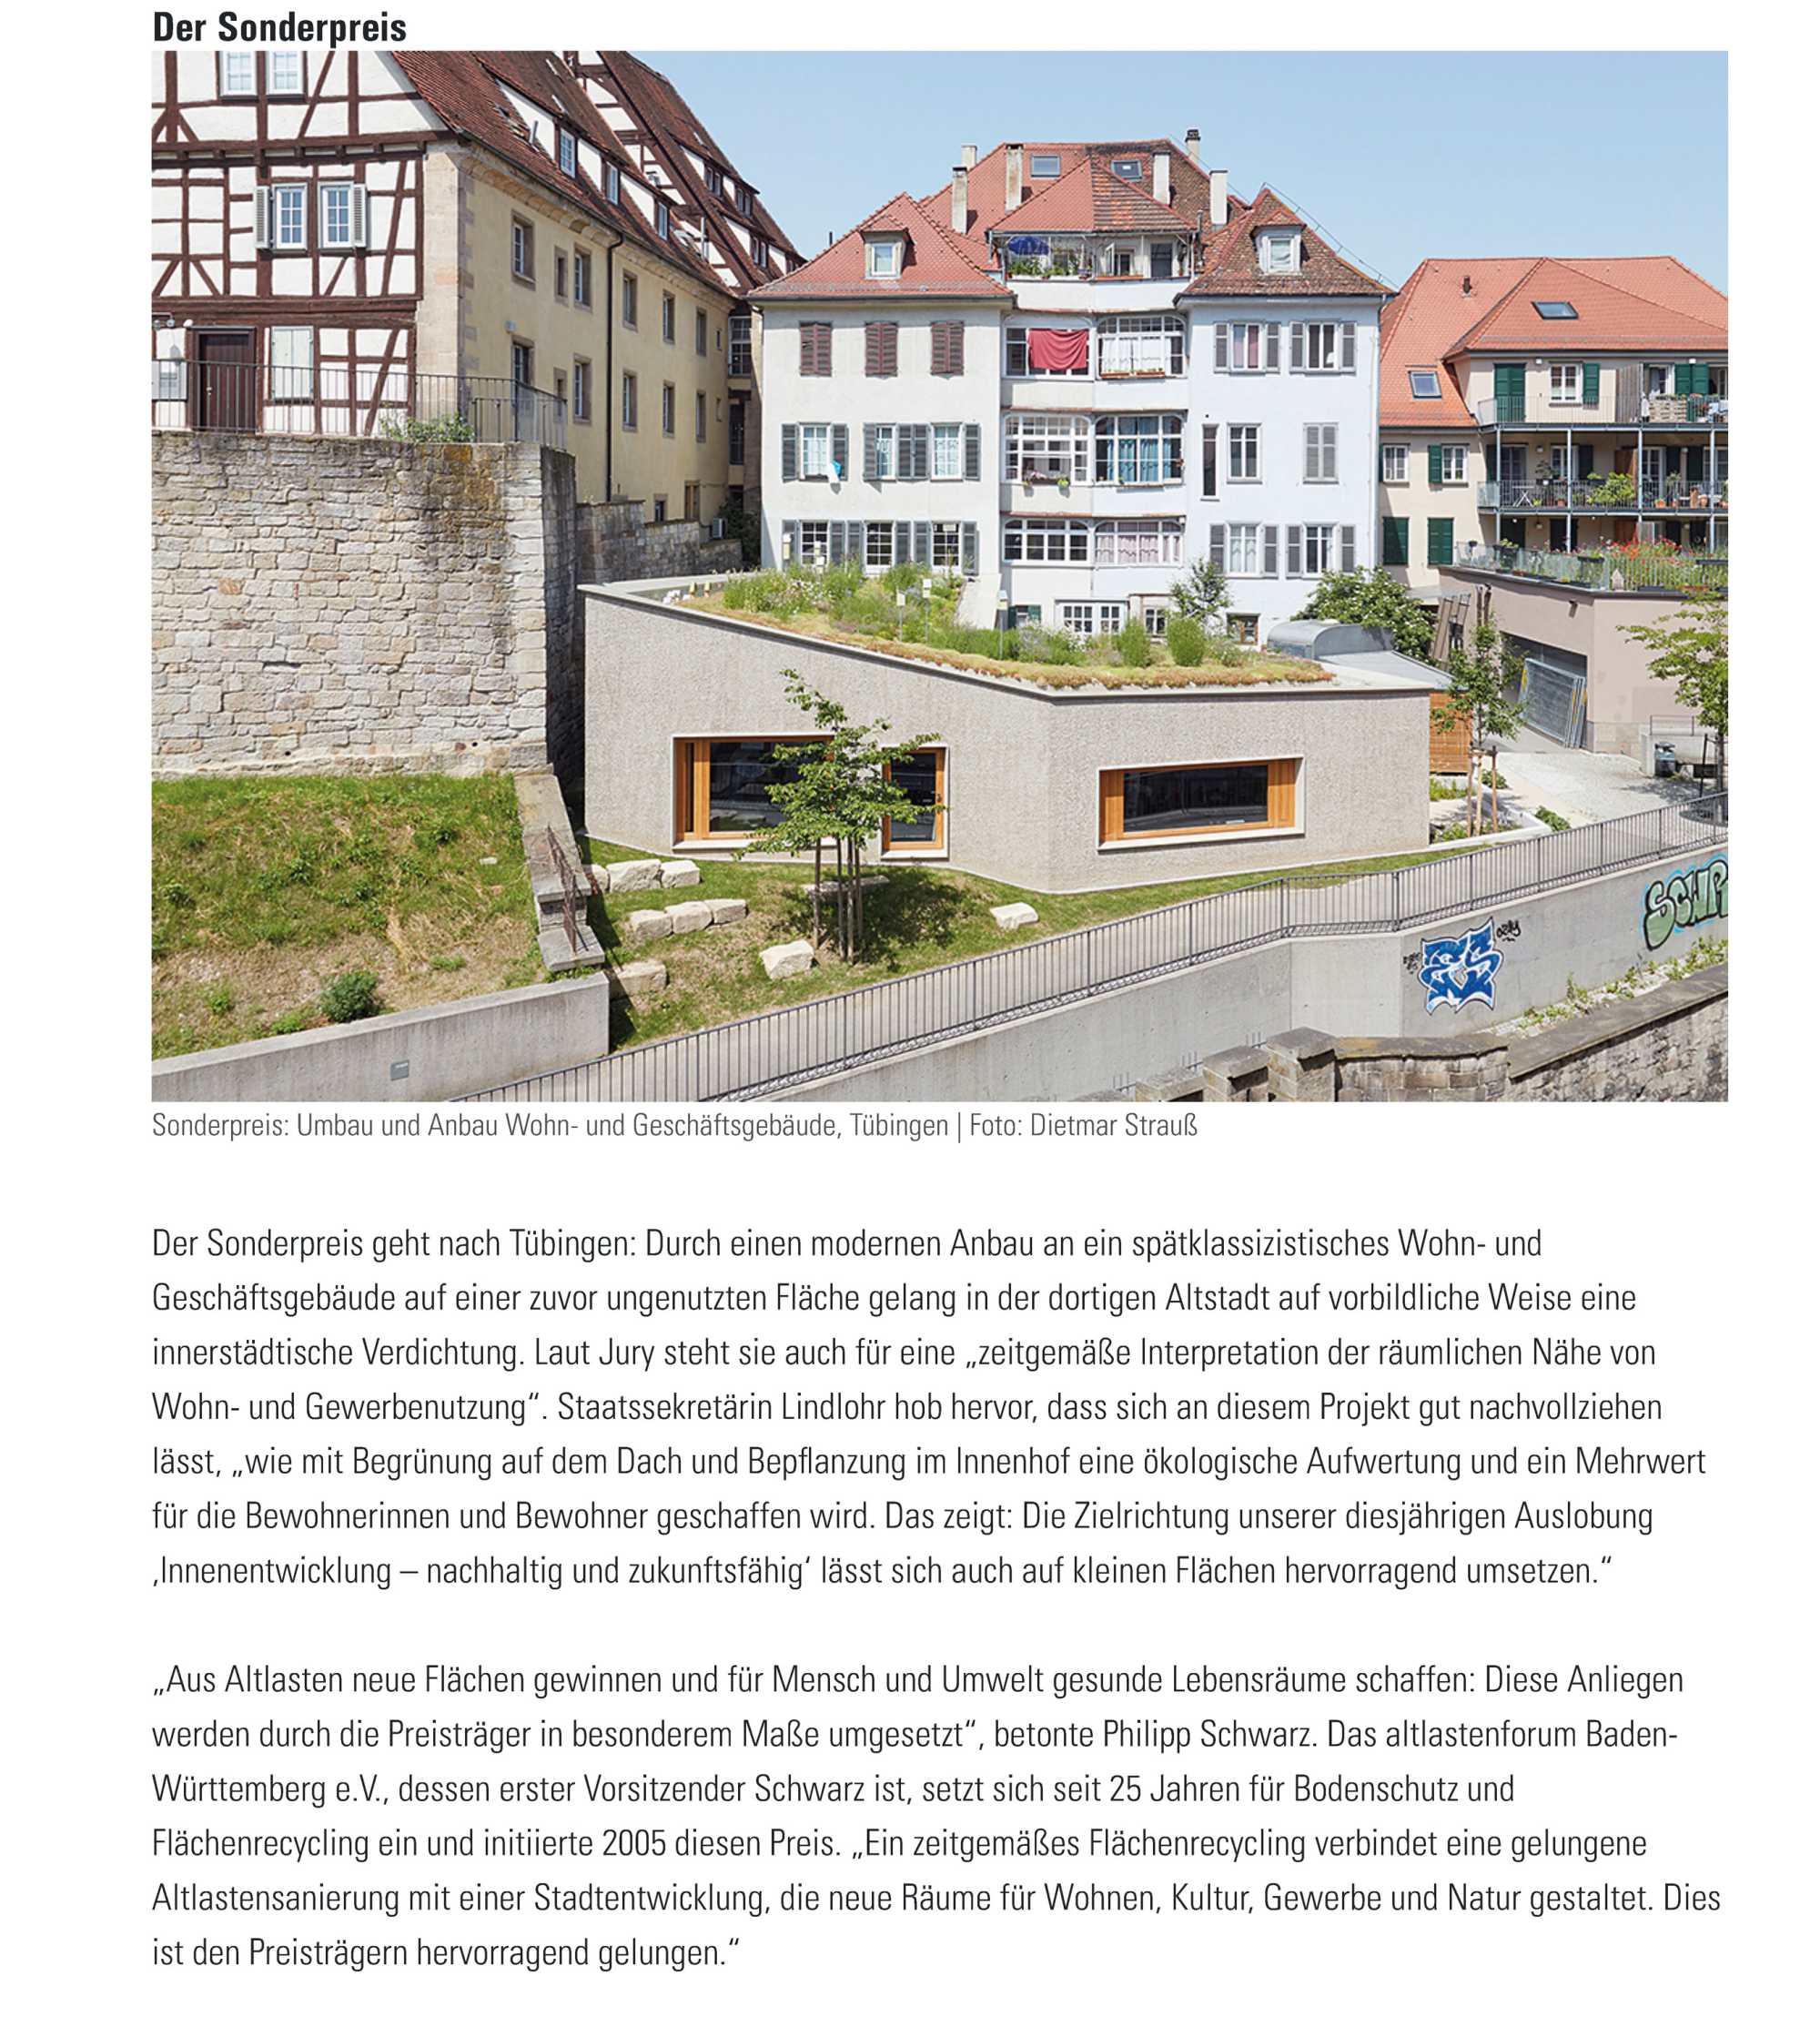 Das Deutsche Architektenblatt veröffentlicht unseren Sonderpreis des Flächenreyclingpreises 2022 in Ihrer Oktoberausgabe ({project_images:field_row_count})